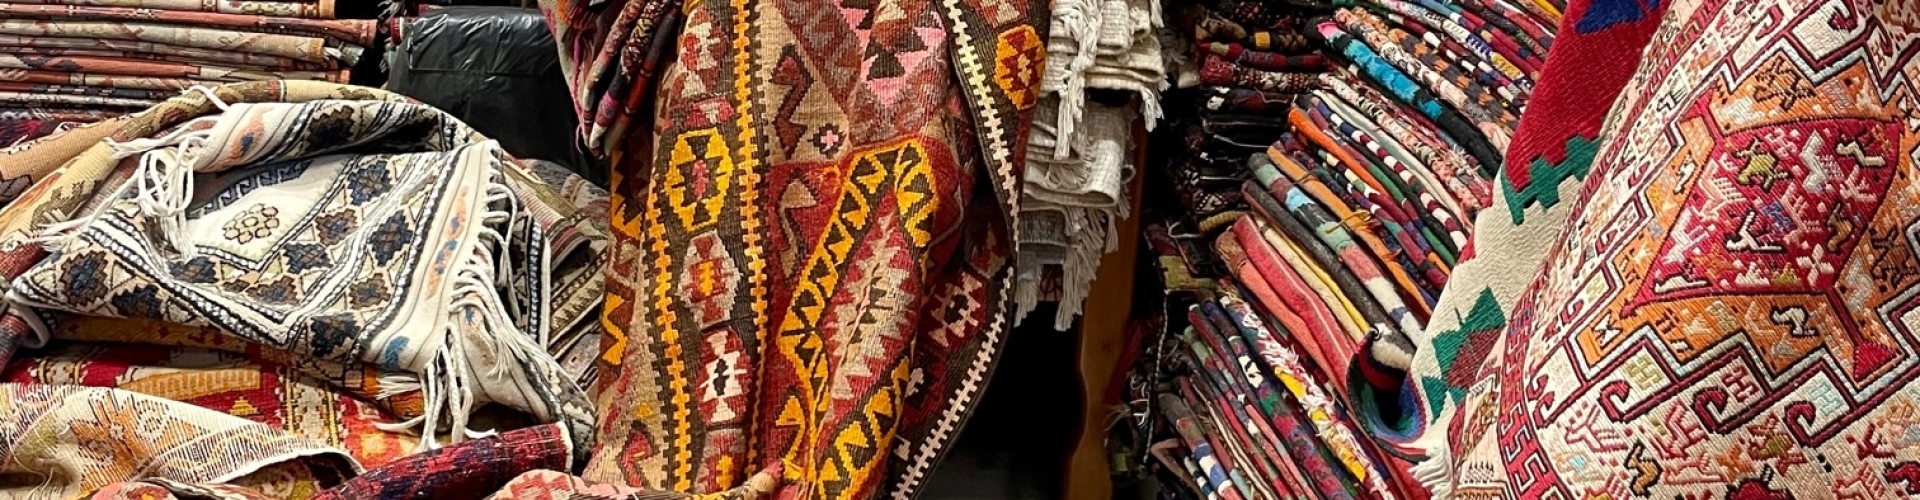 winkel tapijten kleden handgeknoopt izmir centrum turkije